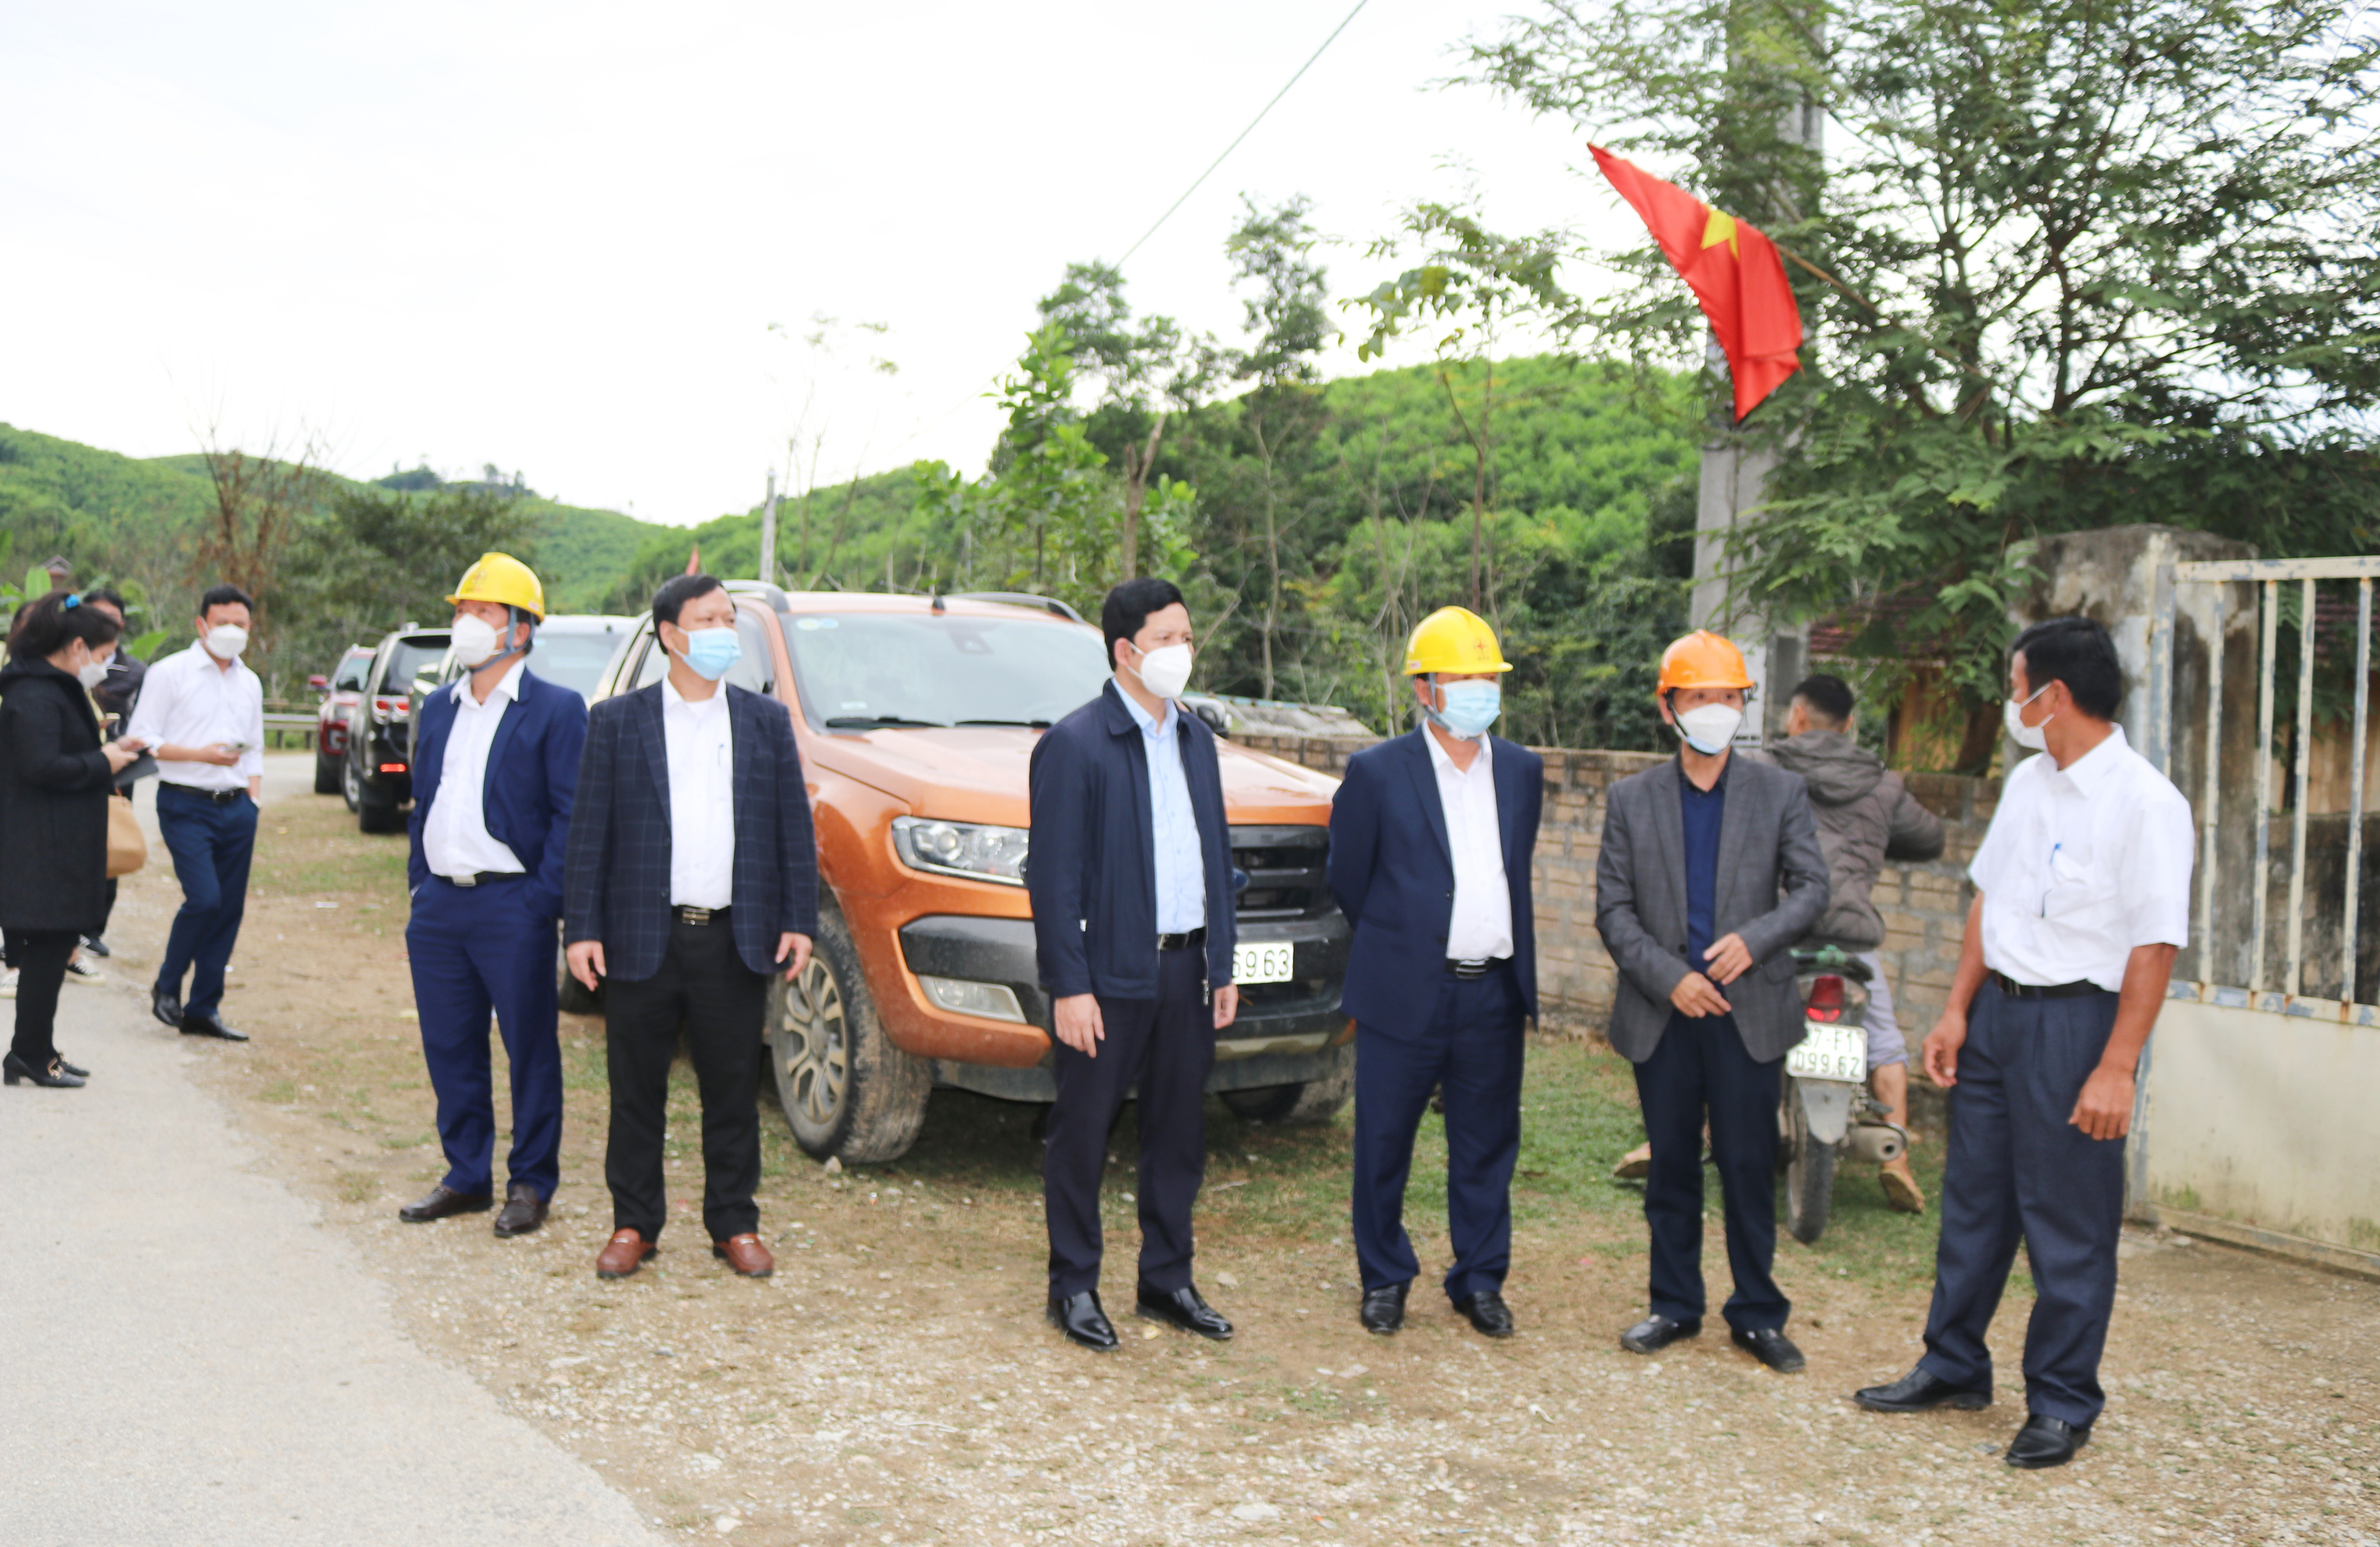 Lãnh đạo Công ty Điện lực và huyện Quế Phong trực tiếp có mặt tại hiện trường chuẩn bị đóng điện trạm biến áp Đồng Tiến xã Đồng Văn, huyện Quế Phong. Ảnh: Thanh Lê